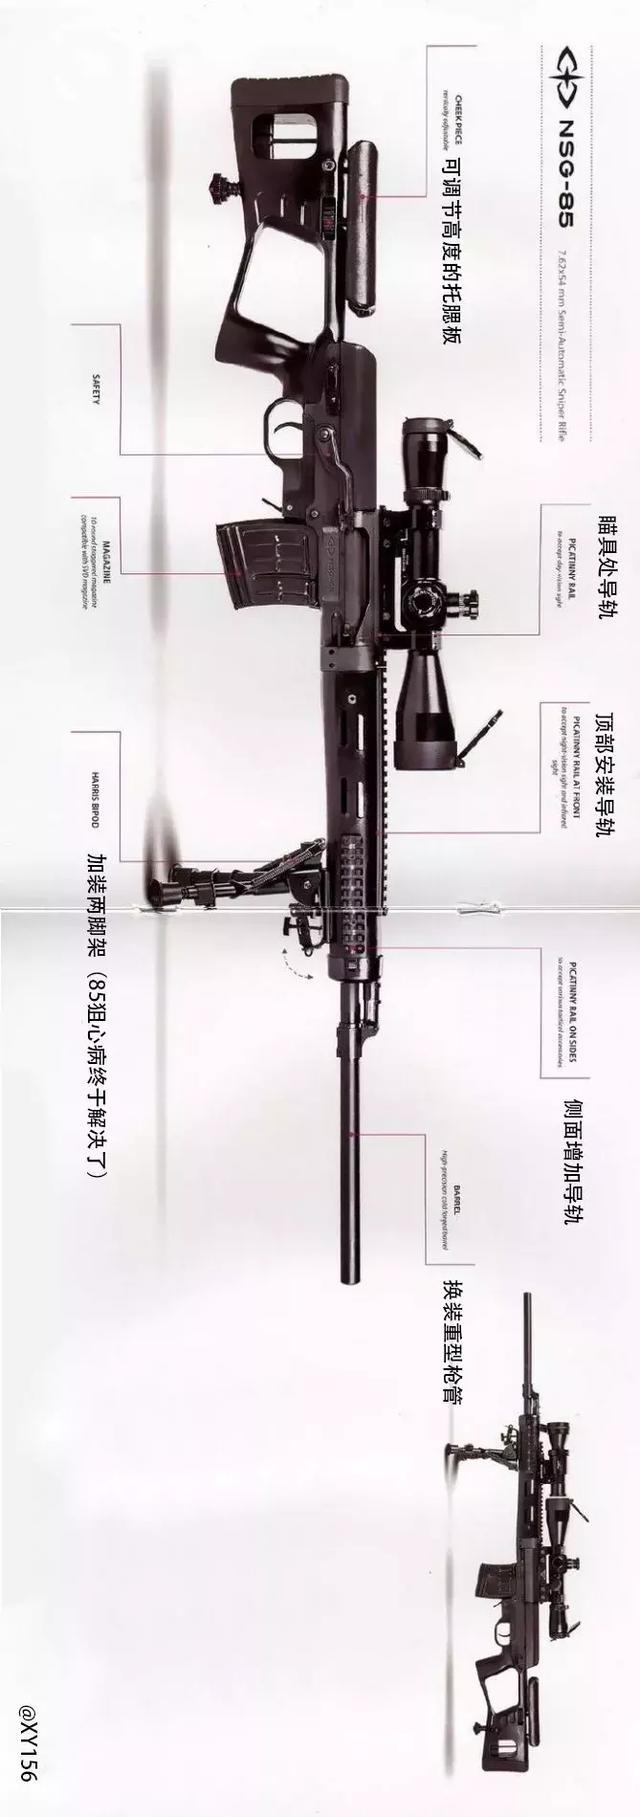 国产NSG127狙击步枪图片